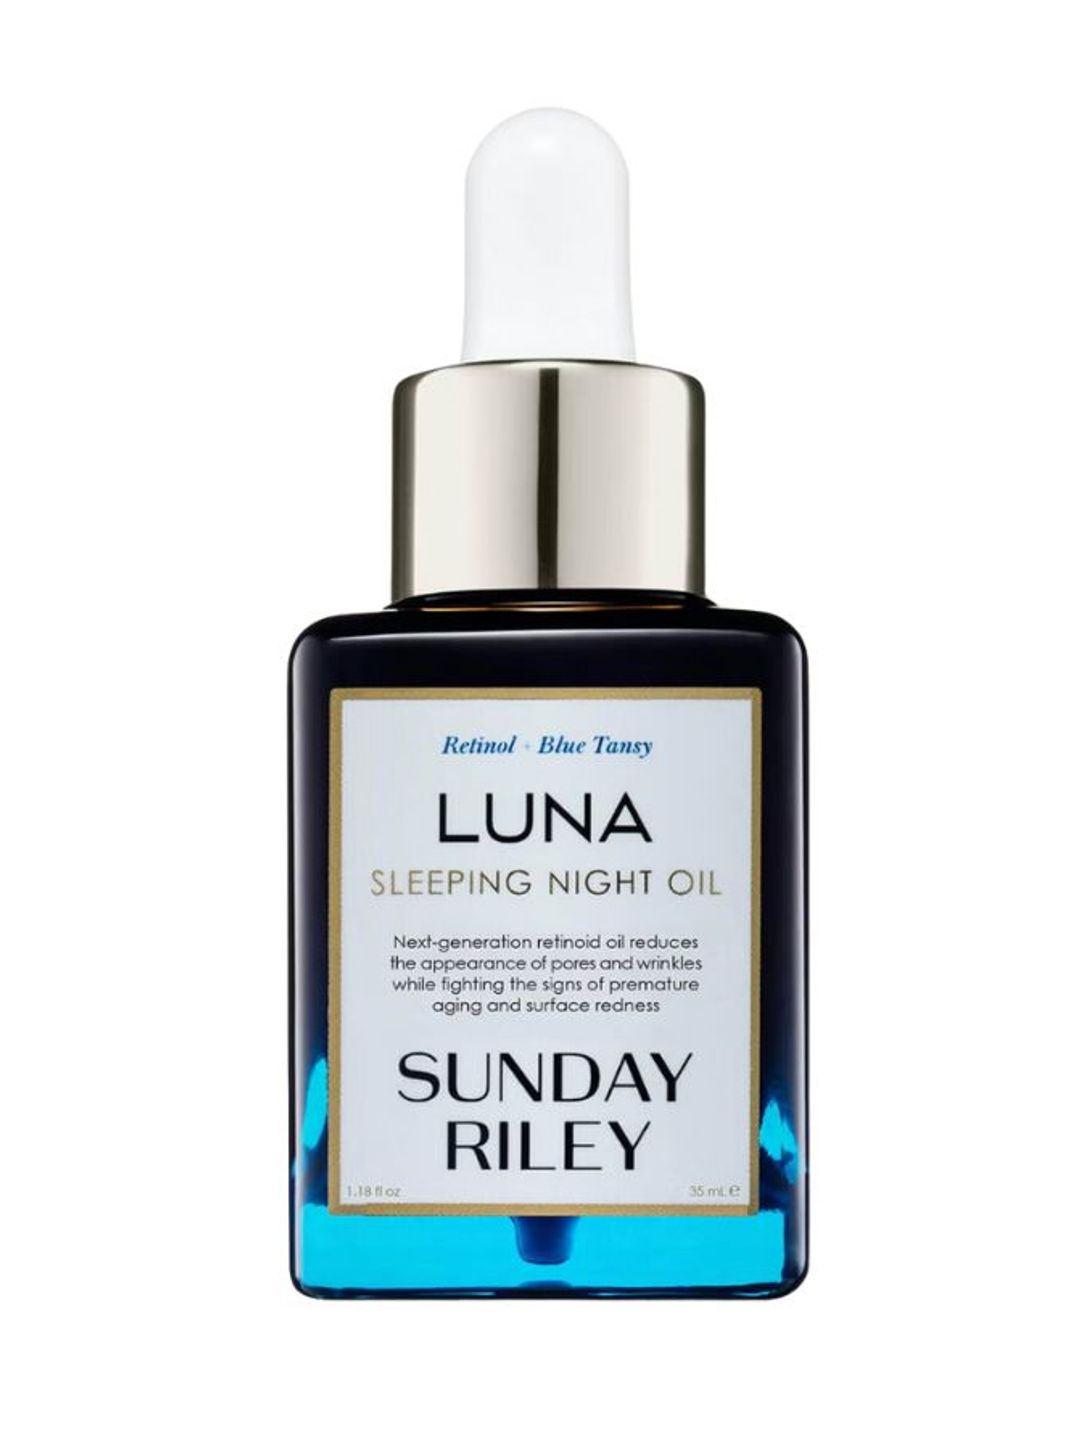 Sunday Riley oil 